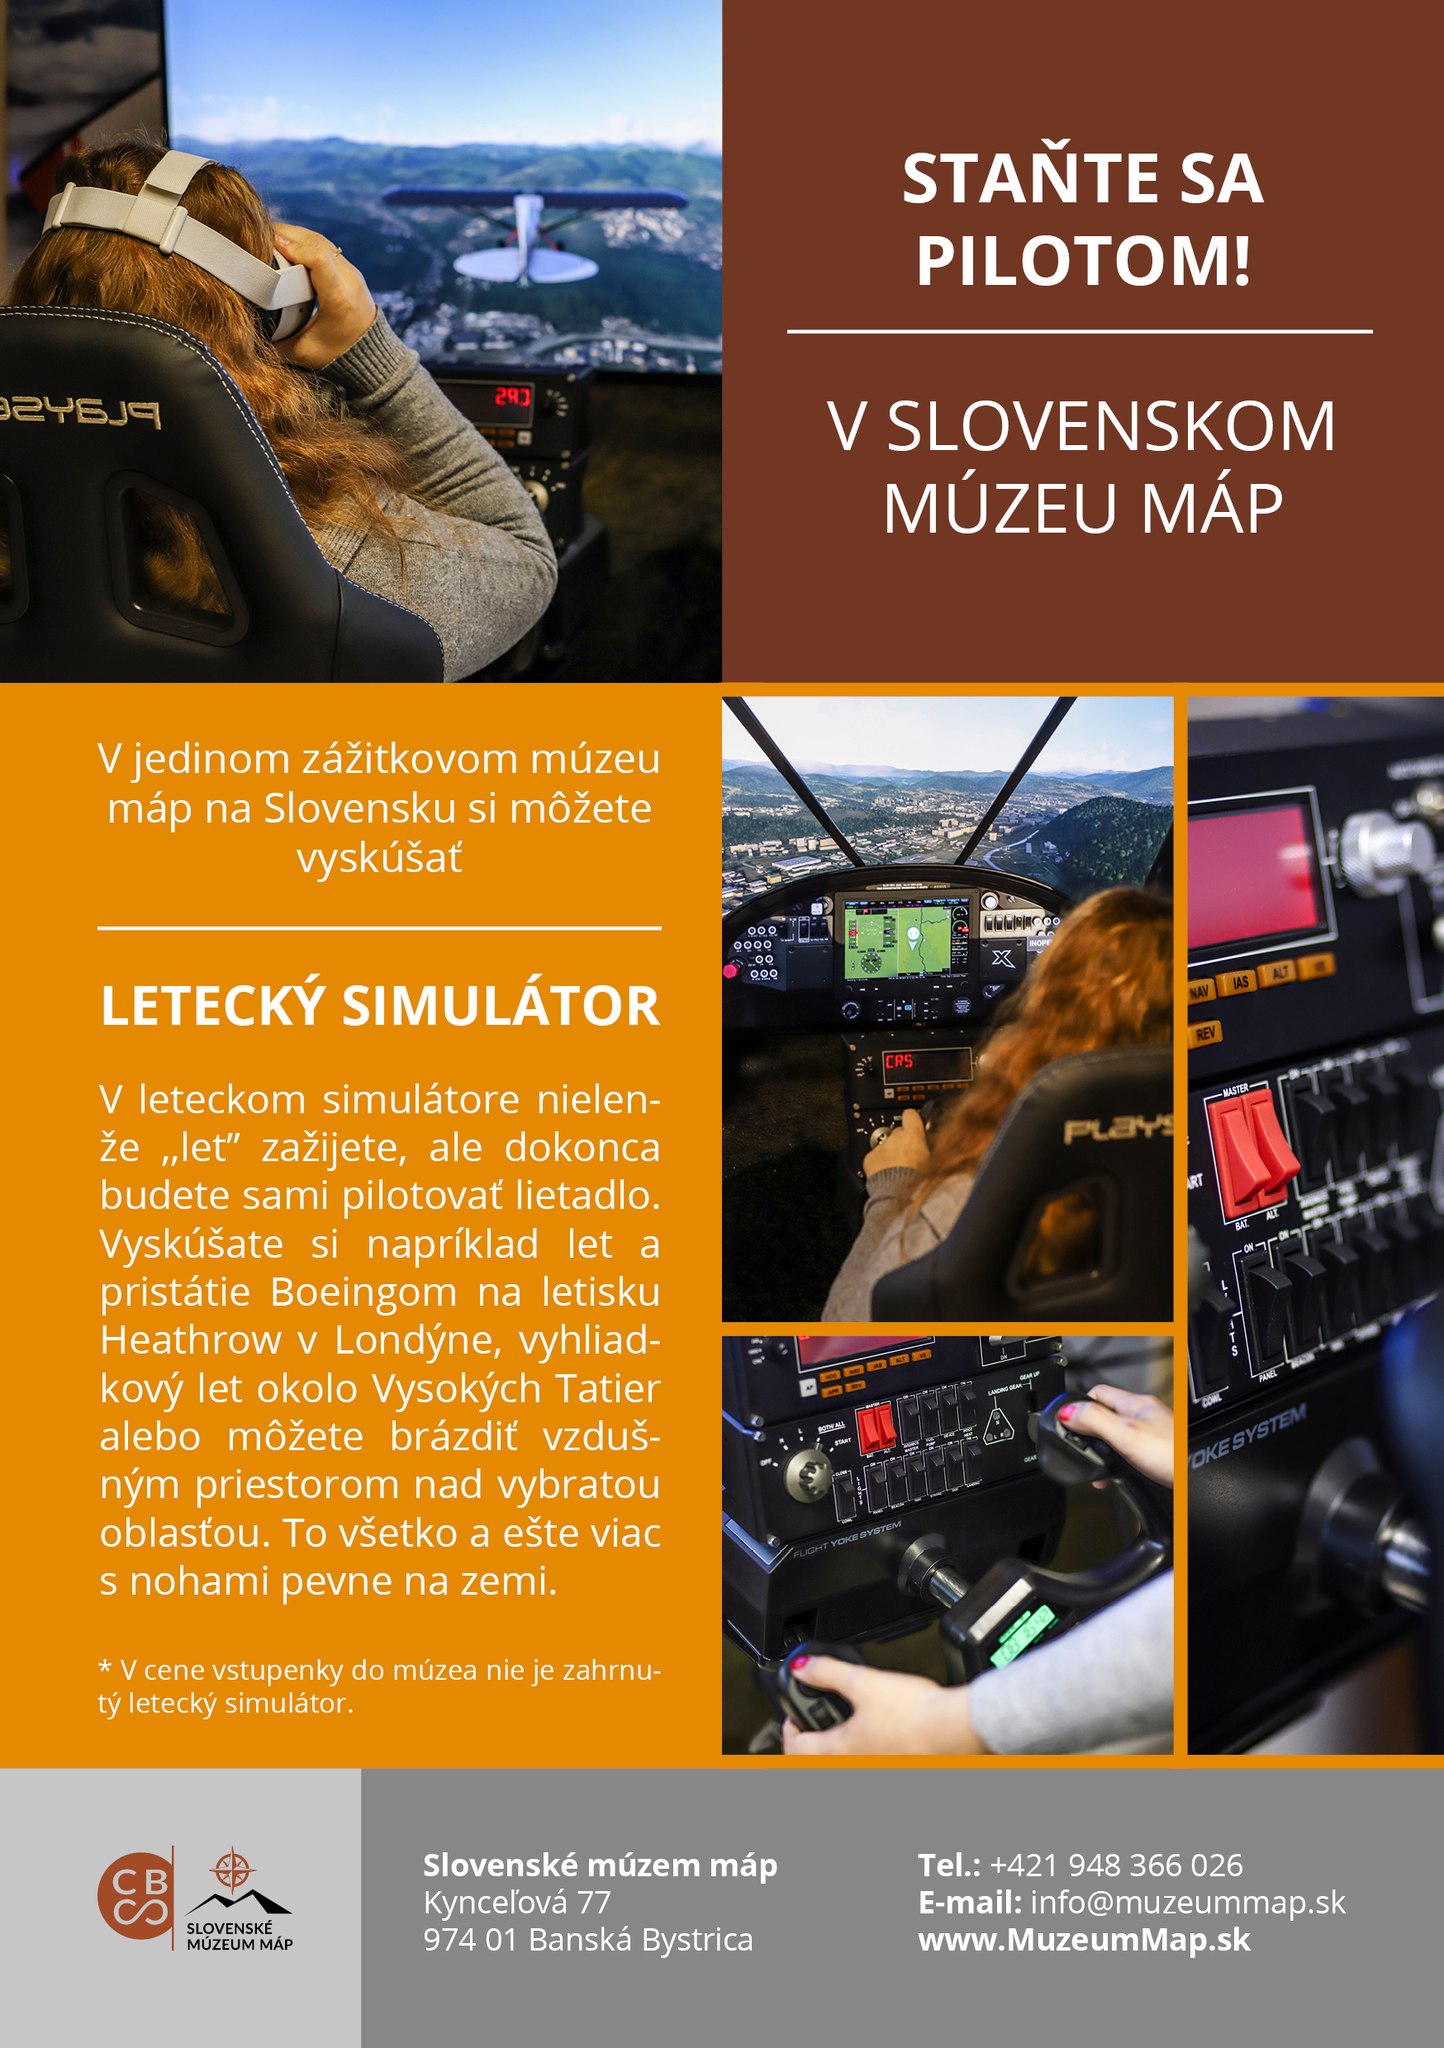 State sa pilotom! 2022 Kynceov - v Slovenskom mzeu mp